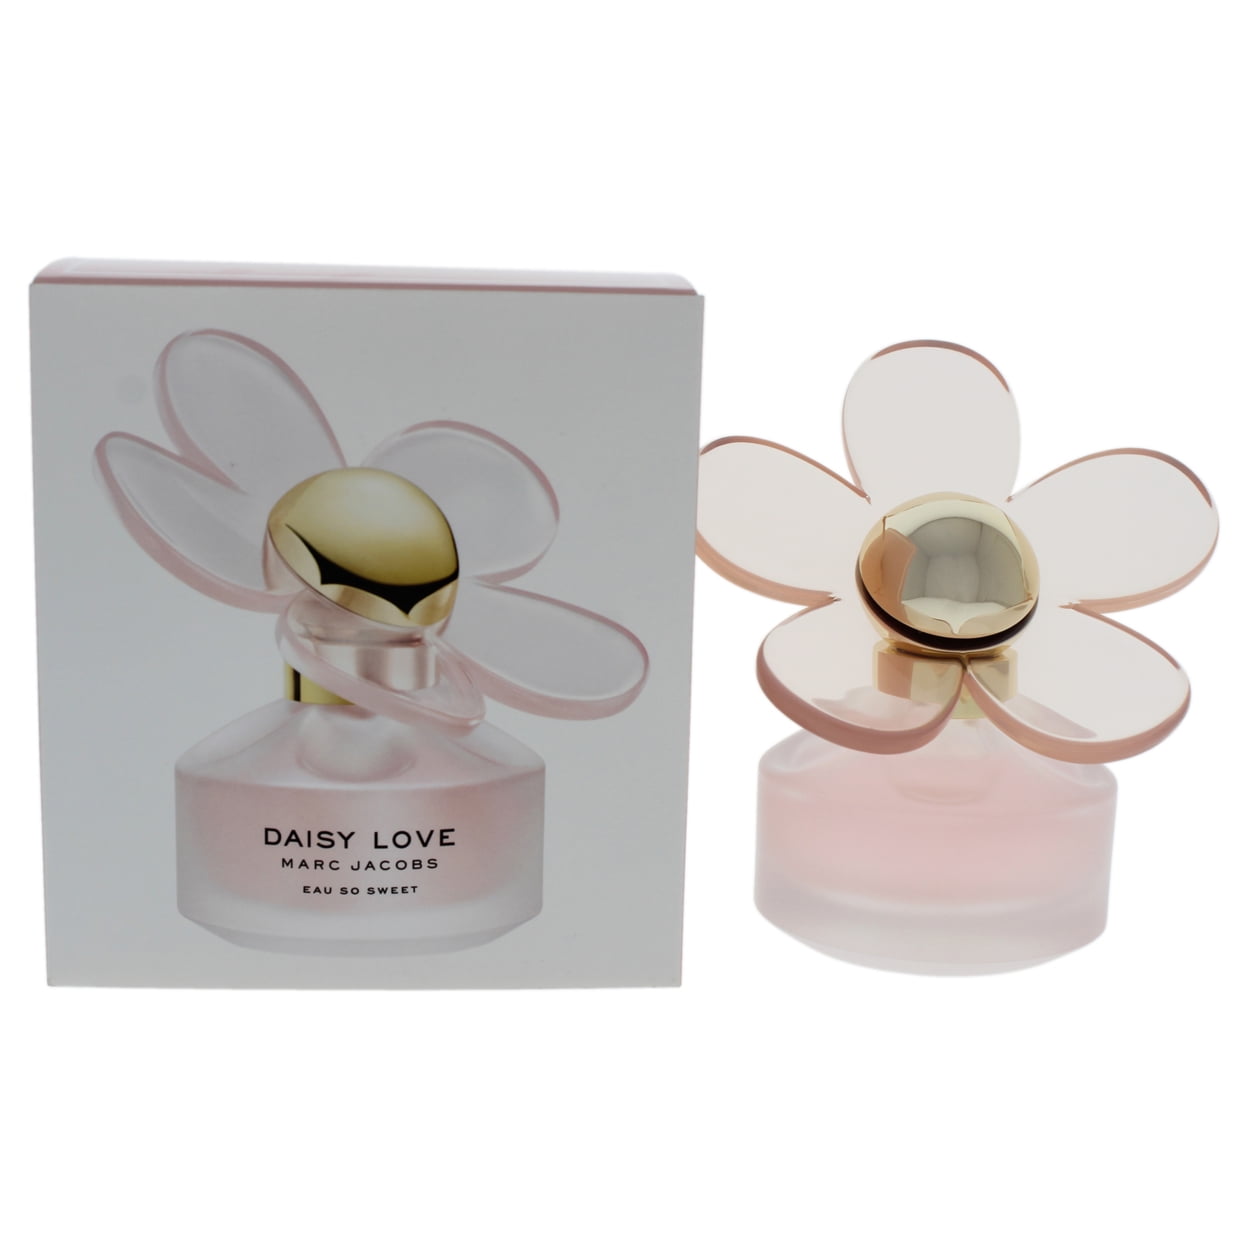 Daisy Love Eau So Sweet Marc Jacobs perfume - a fragrance for